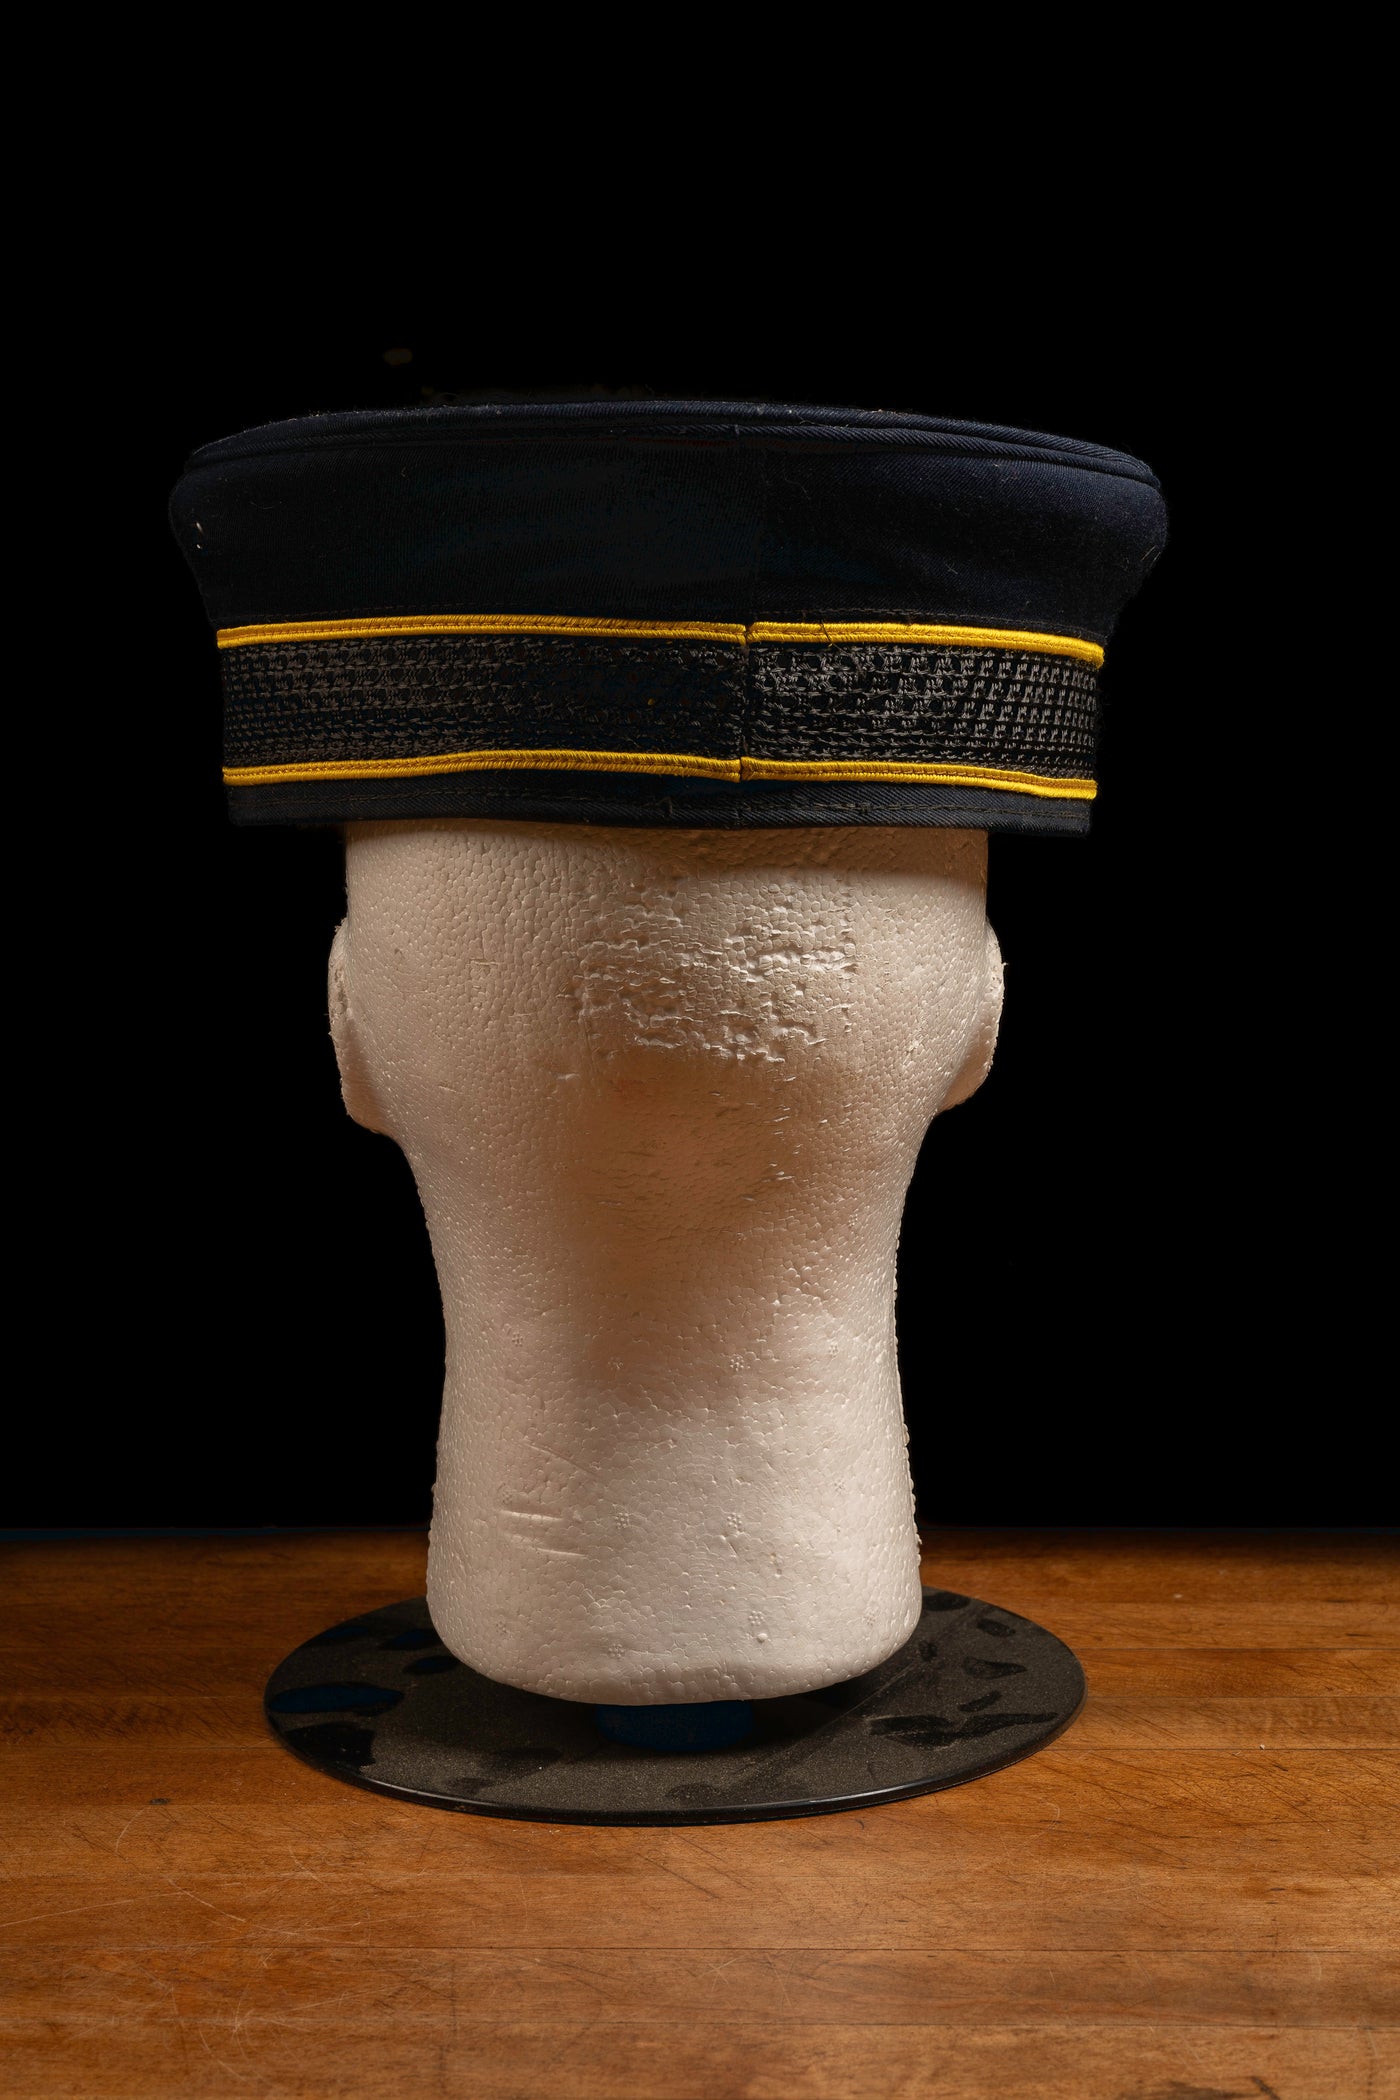 Vintage CTA Conductor's Cap